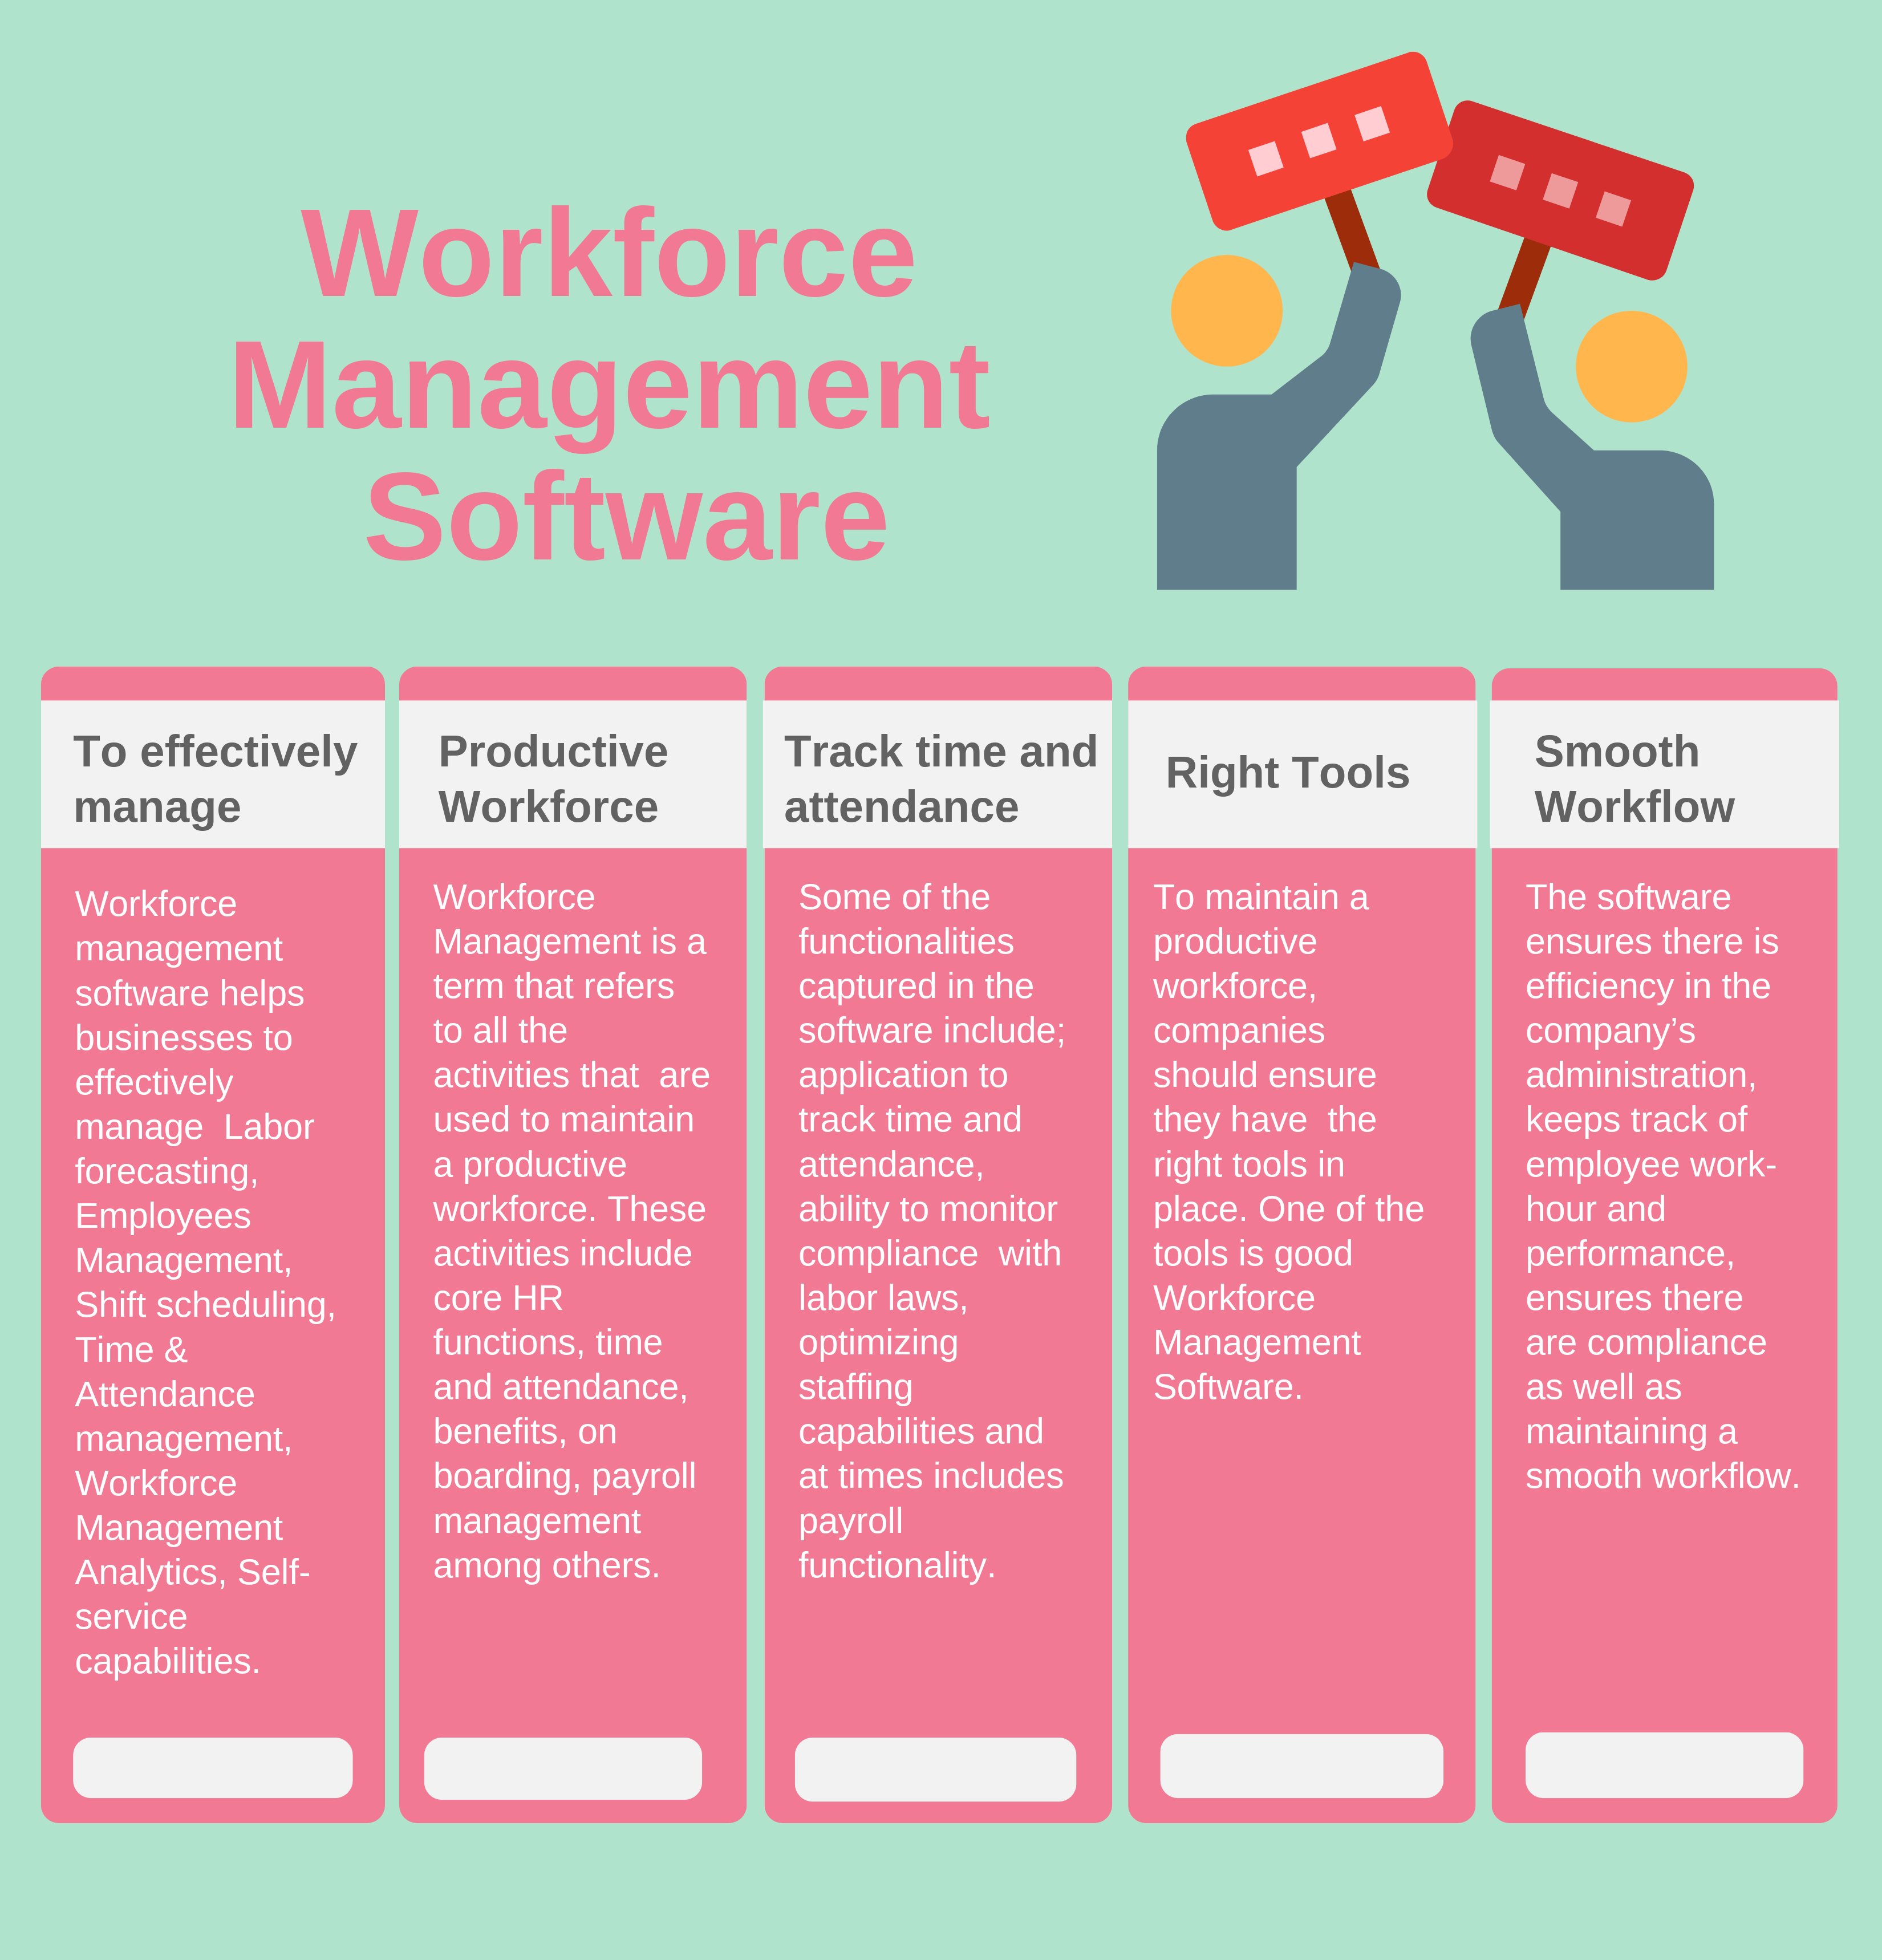 WorkForce Management: entenda o que é e coloque em prática!